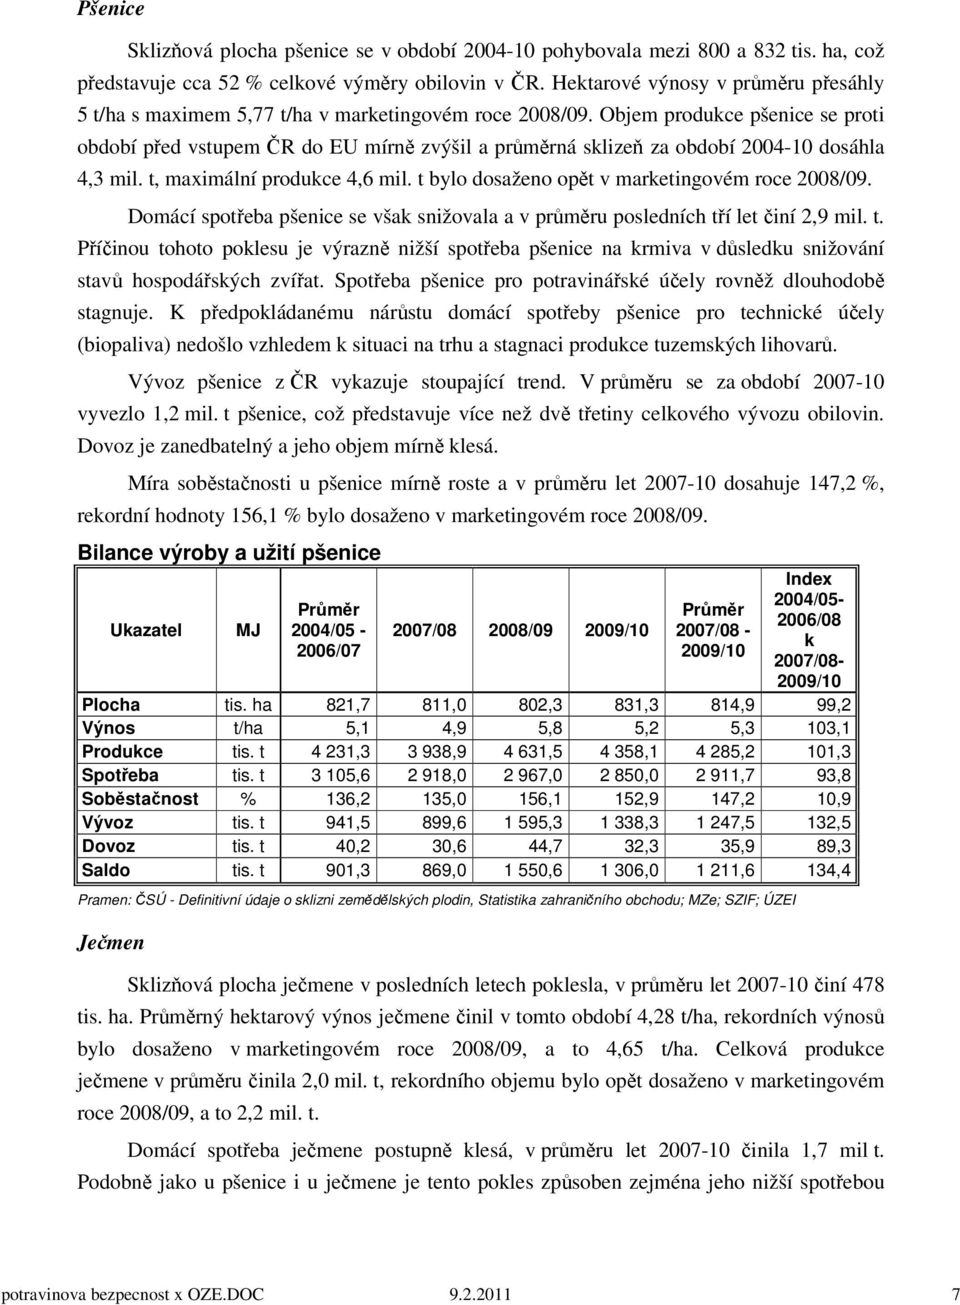 Objem produkce pšenice se proti období před vstupem ČR do EU mírně zvýšil a průměrná sklizeň za období 2004-10 dosáhla 4,3 mil. t, maximální produkce 4,6 mil.